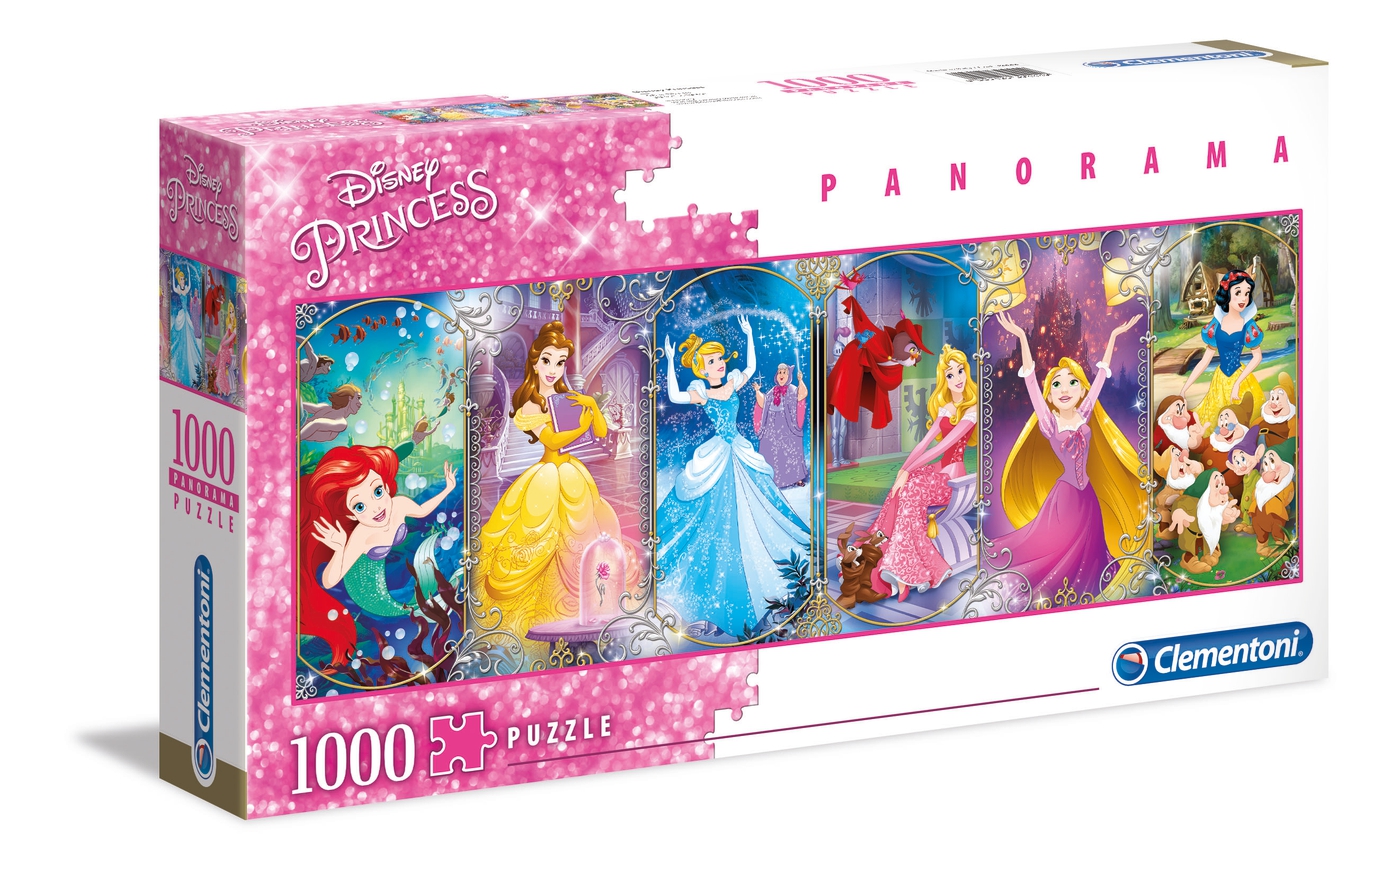 Puzzle 1000 piezas -Panorama: Disney Princess- Clementoni